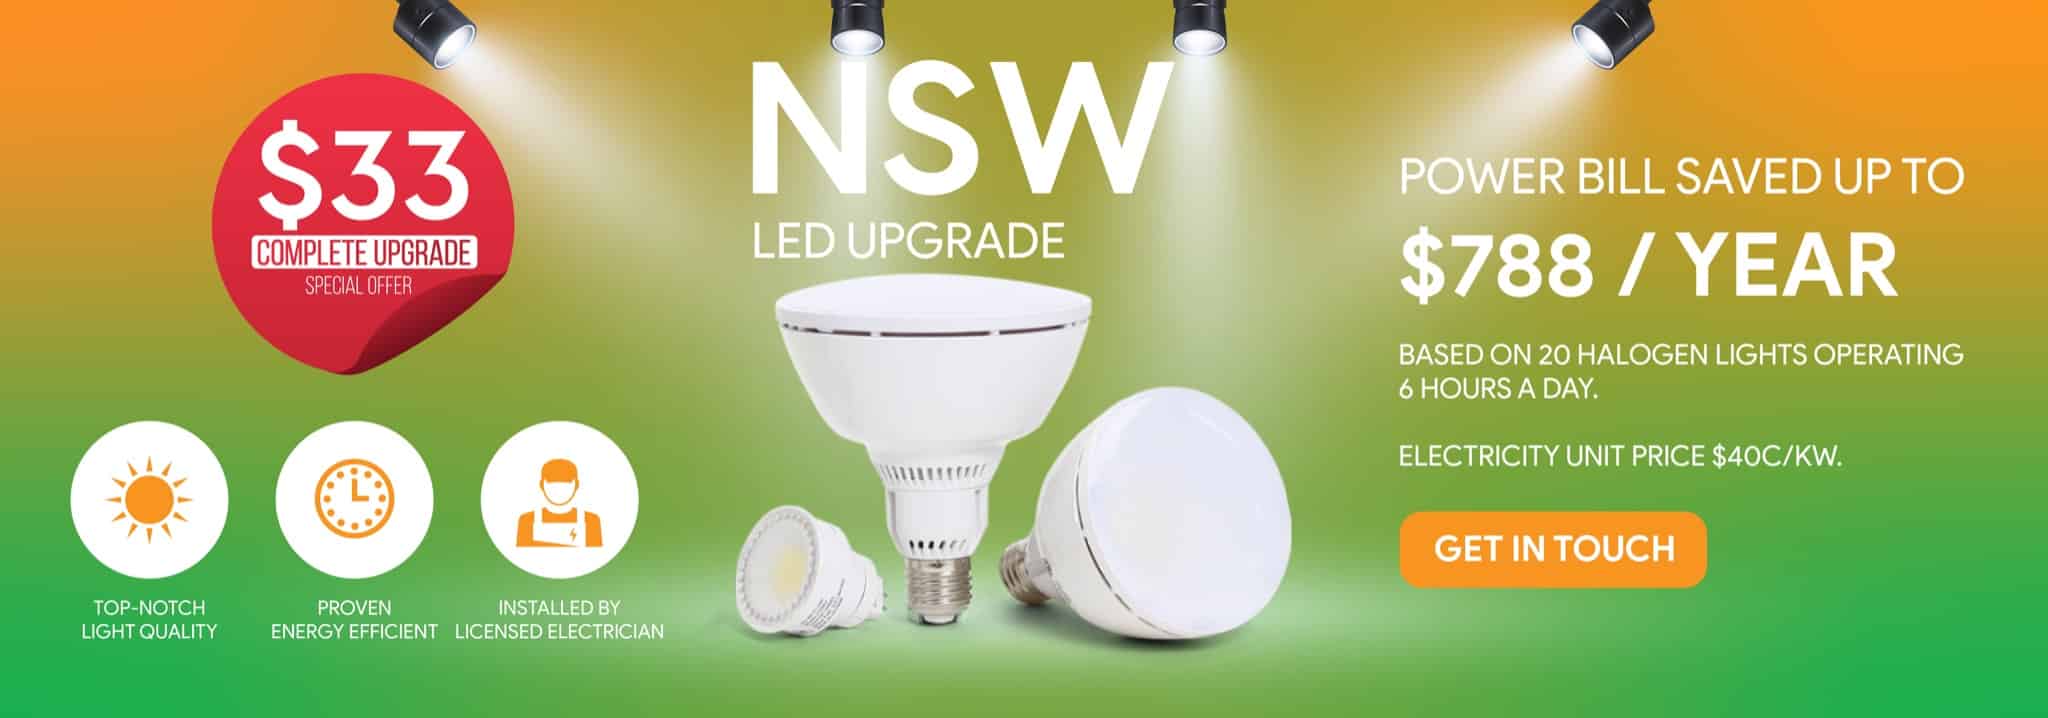 NSW Schemes For LED Upgrades – $33 LED Upgrade